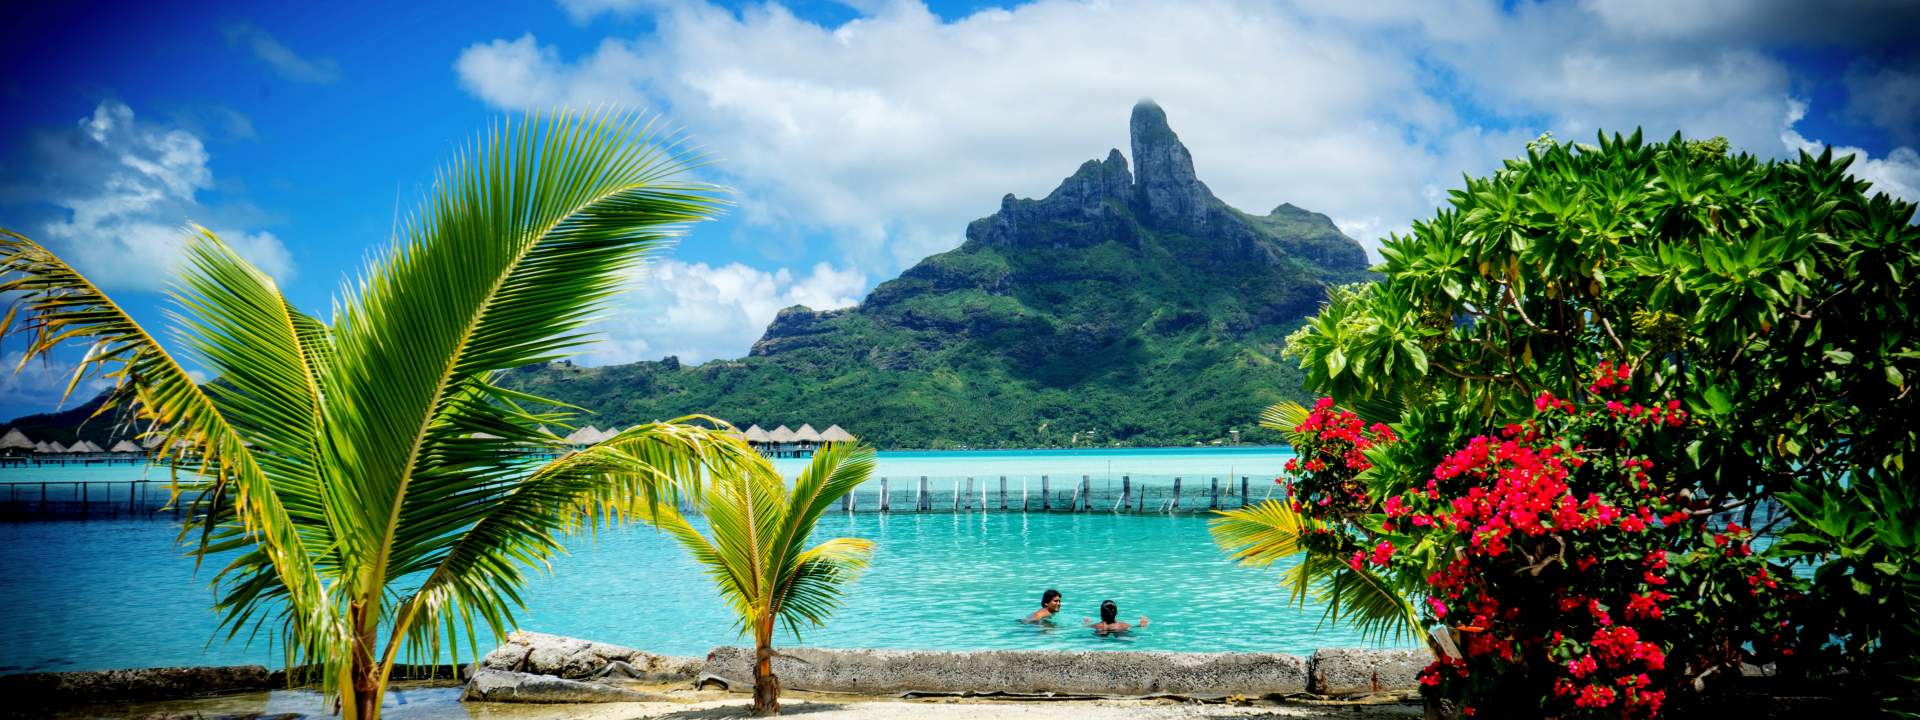 Explore Huahine and sail to Bora Bora in 6 days